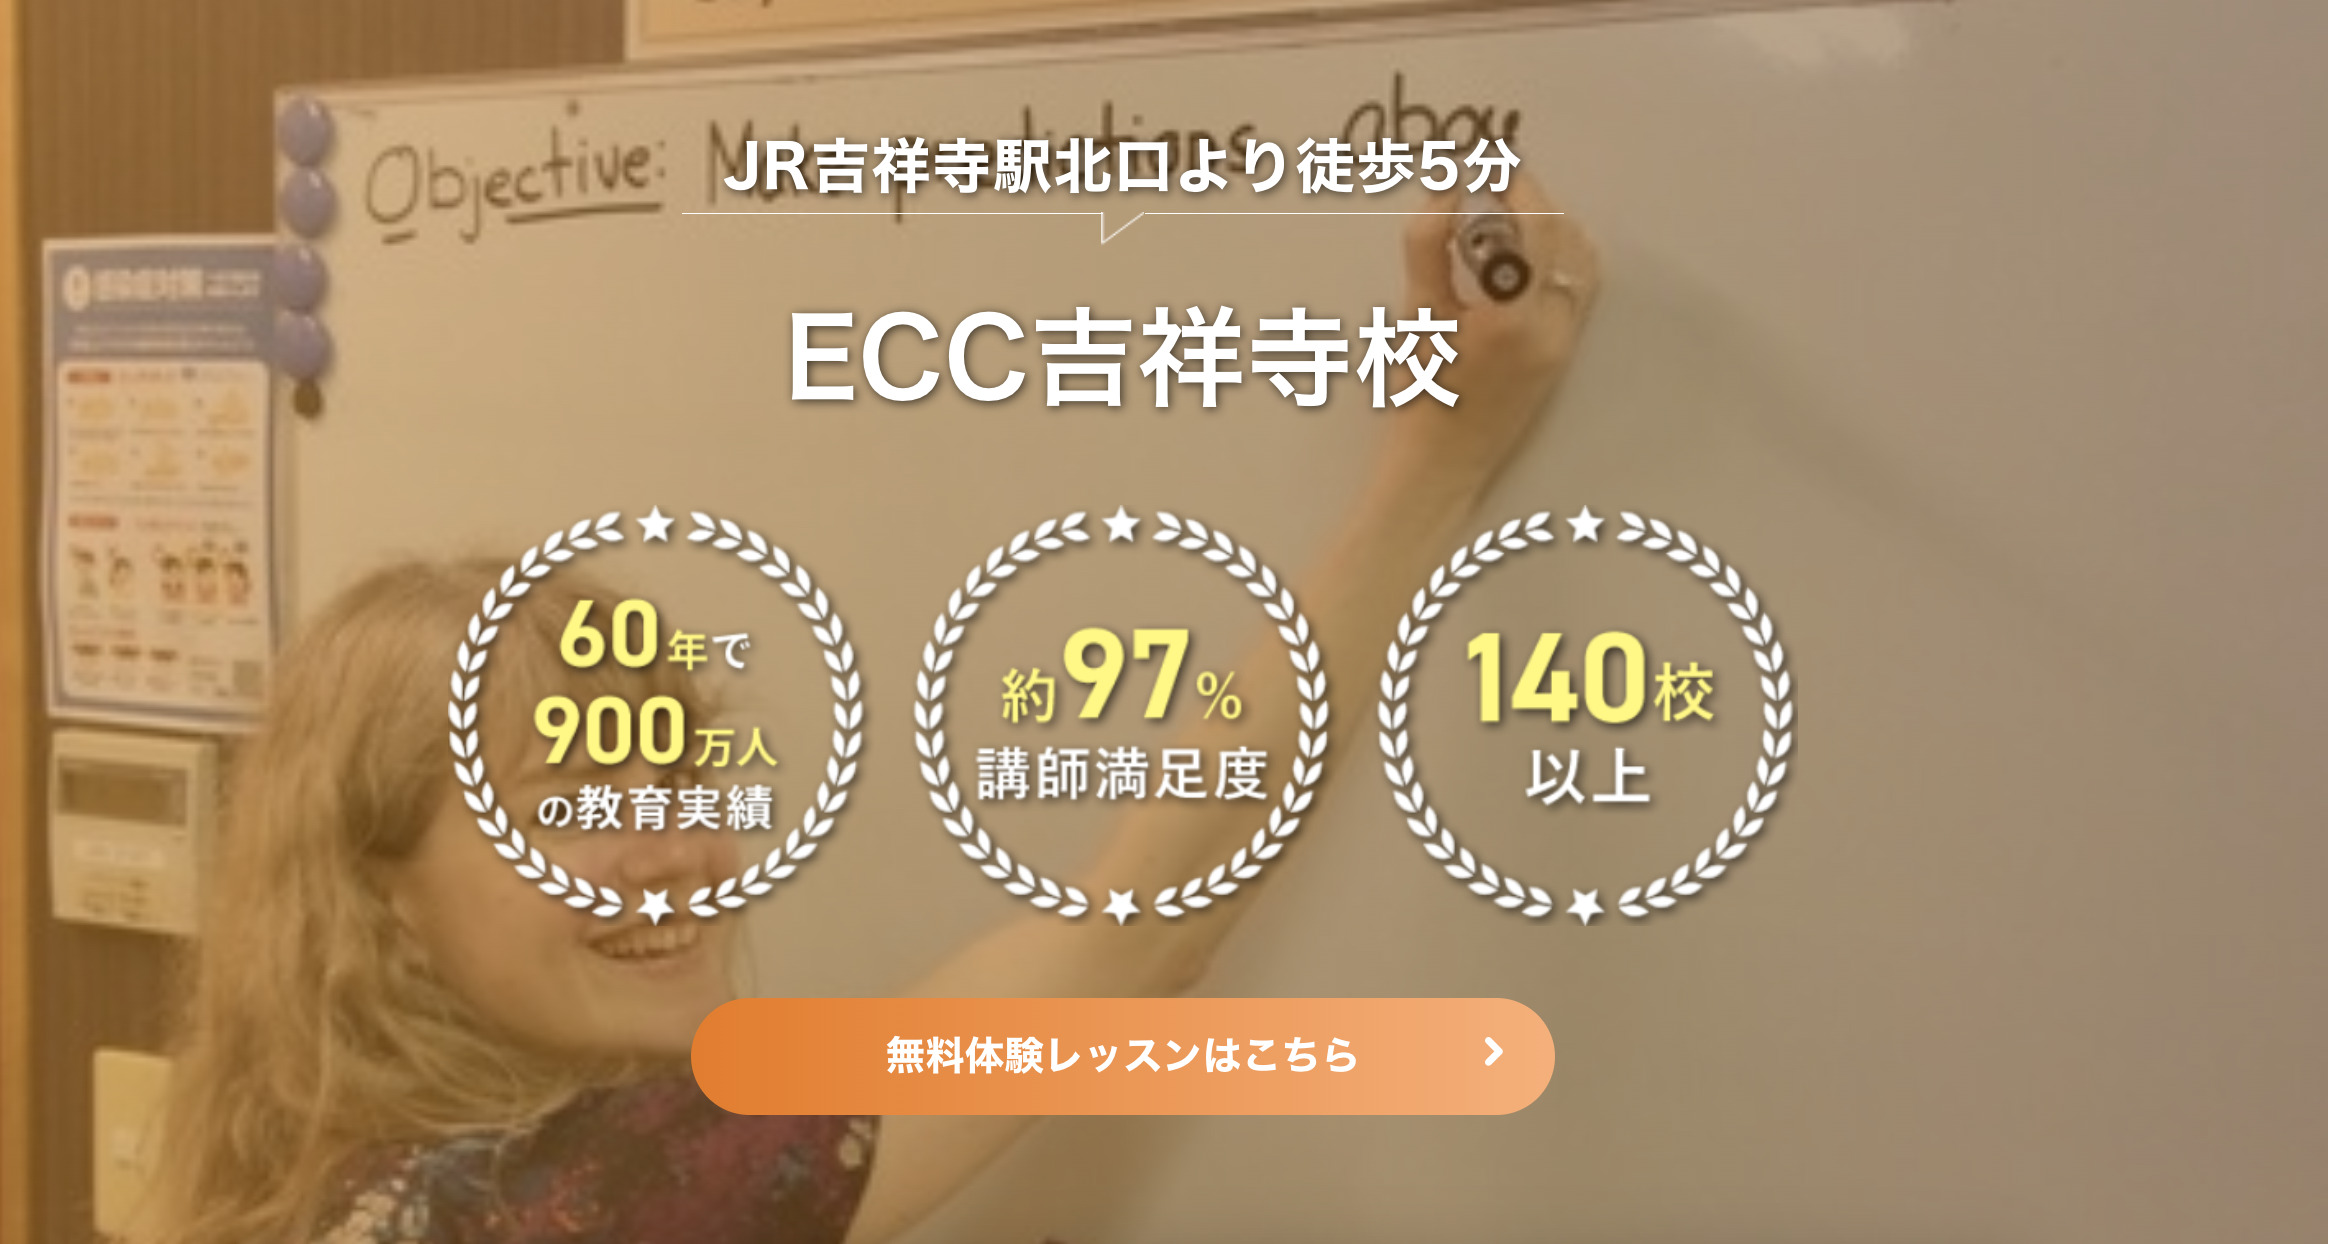 ECC外語学院吉祥寺校